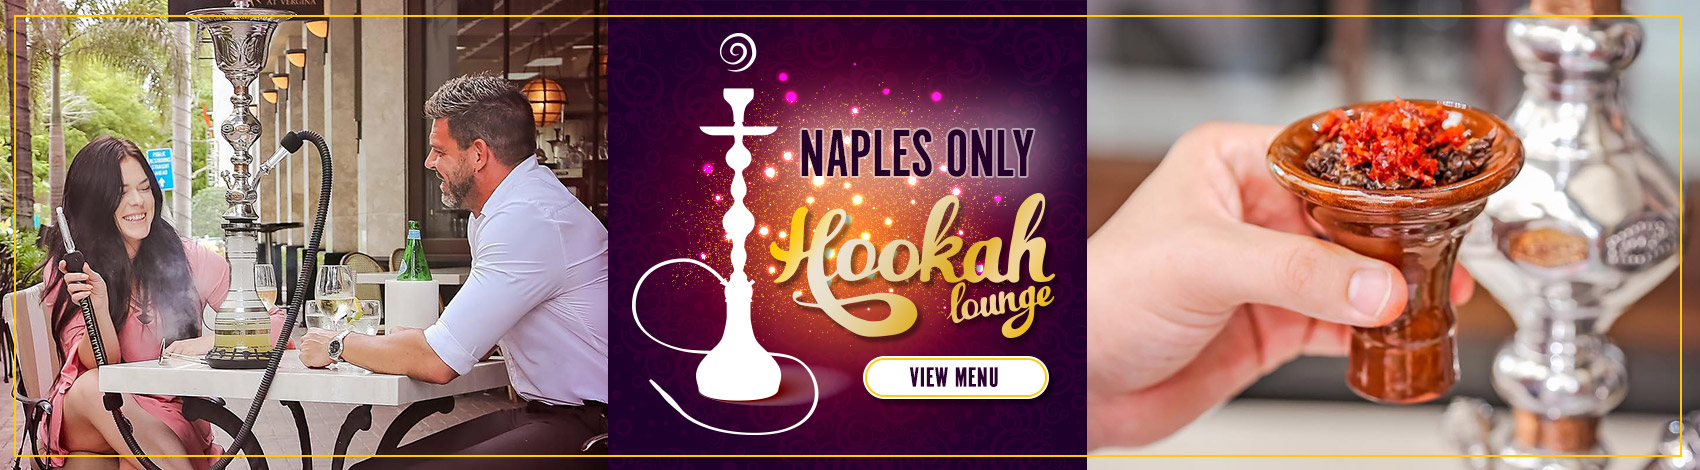 Naples Hookah Lounge Menu